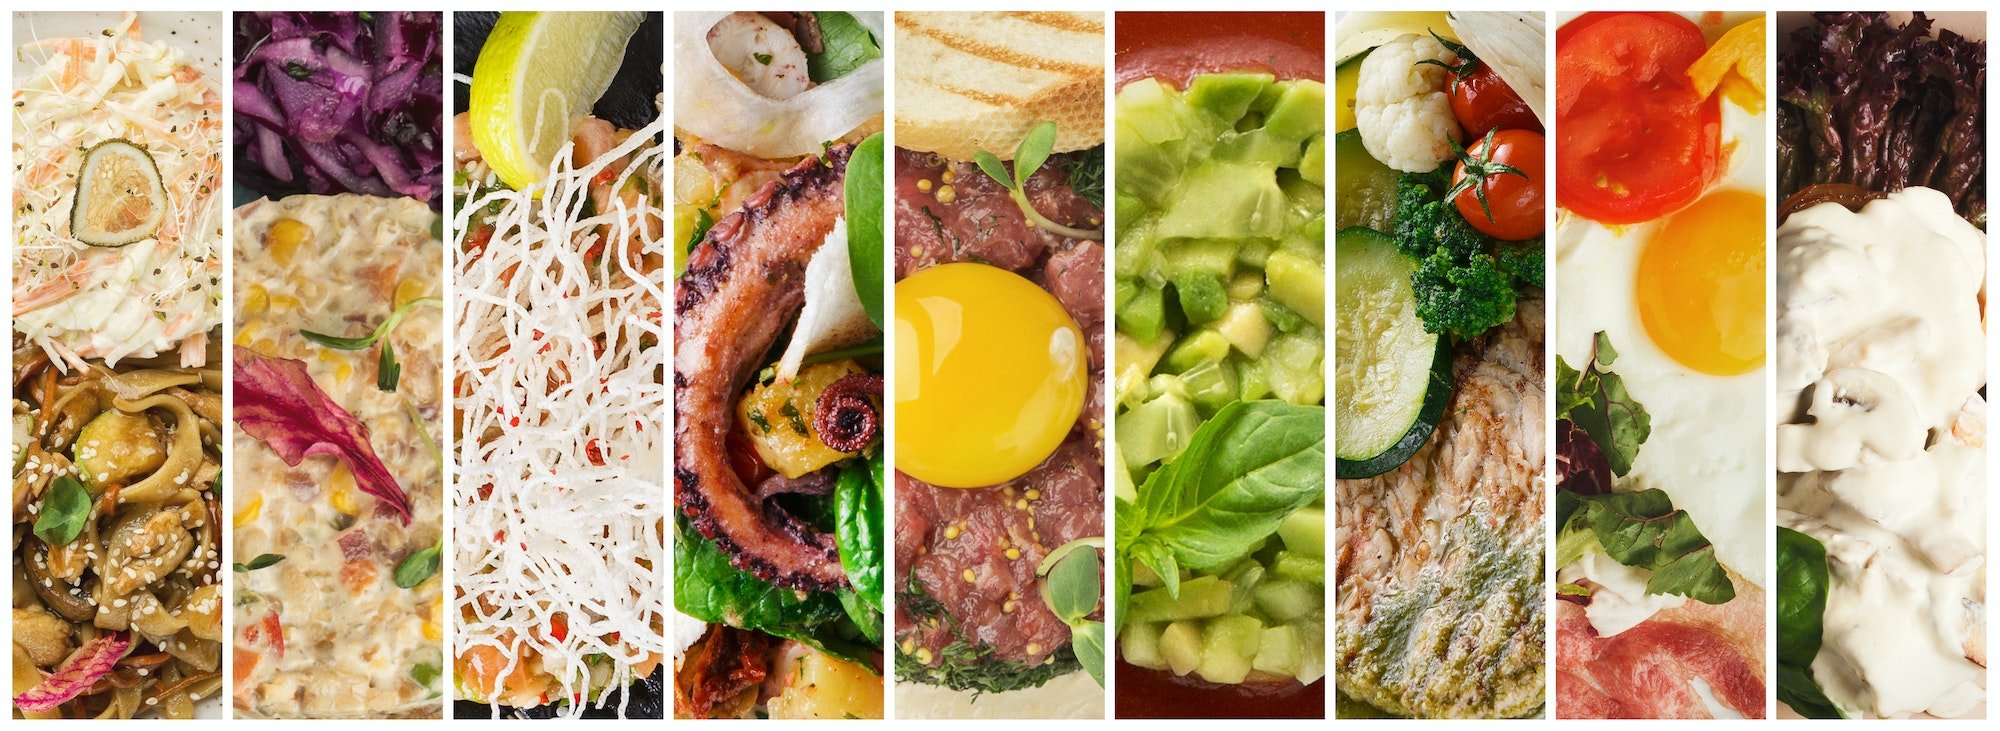 Collage delicious meals assortment, restaurant menu composition